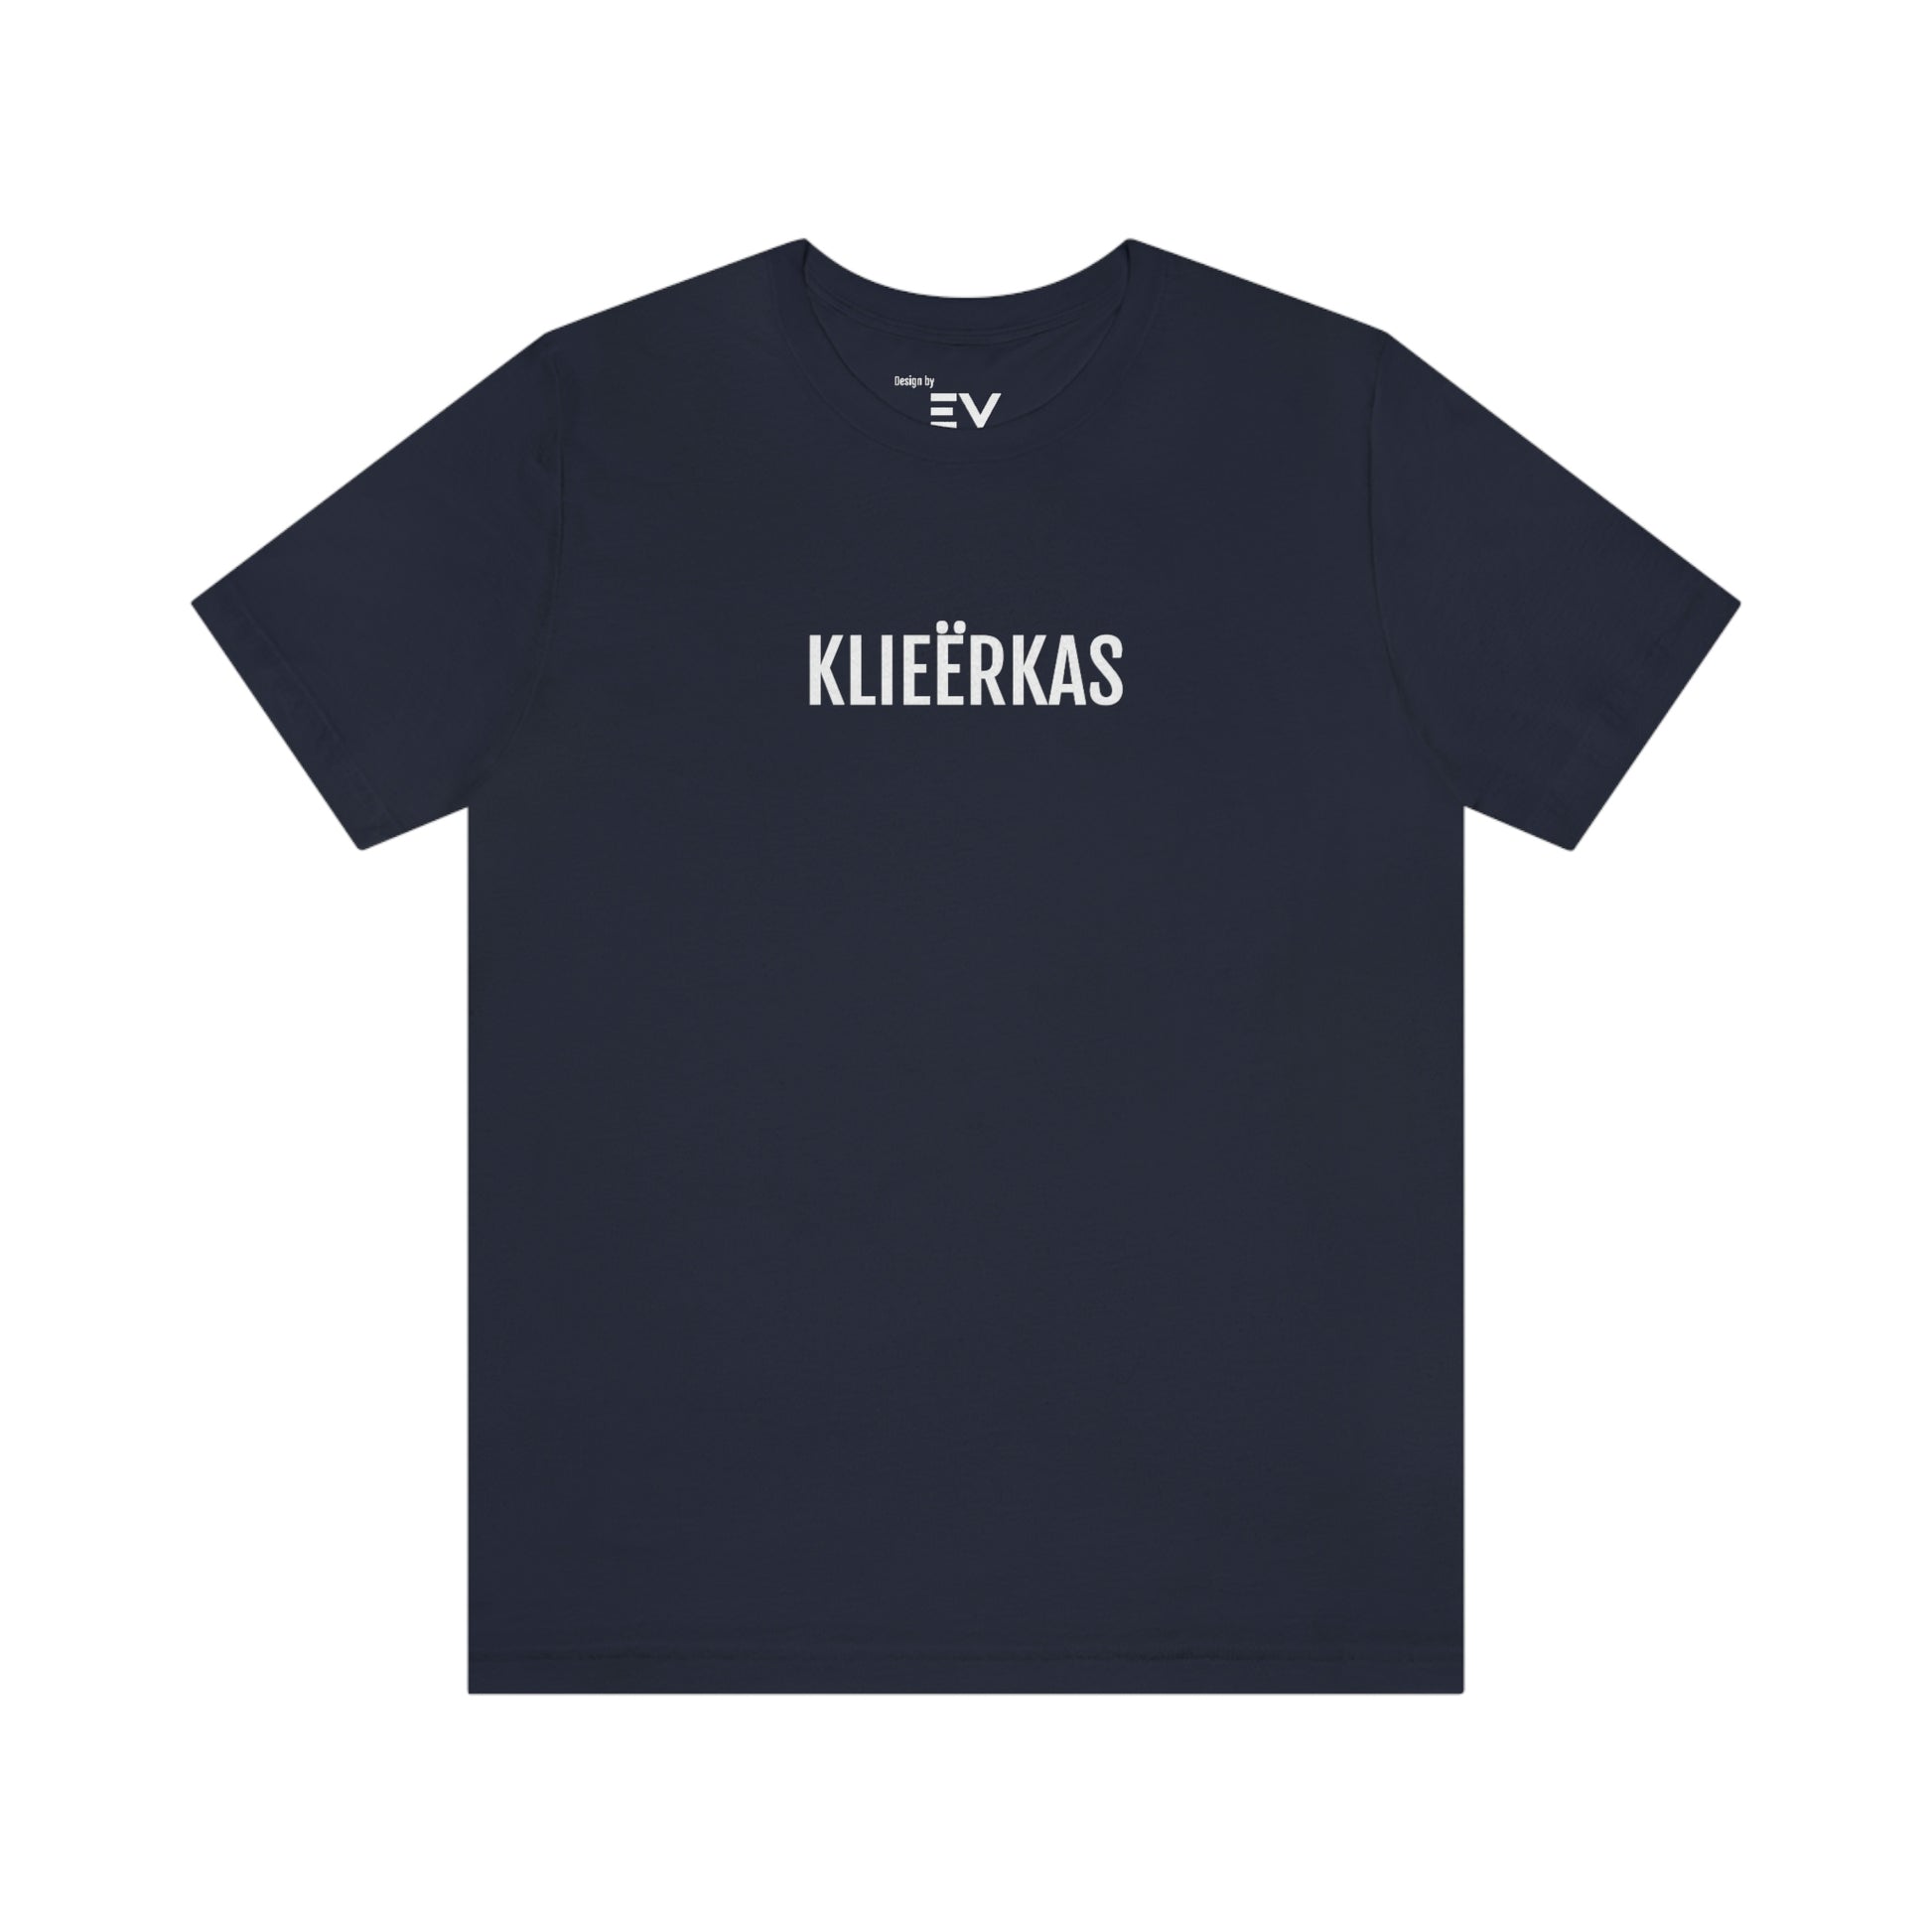 Klieërkas | Mannen T-Shirt uit Antwerpen - Marine blauw